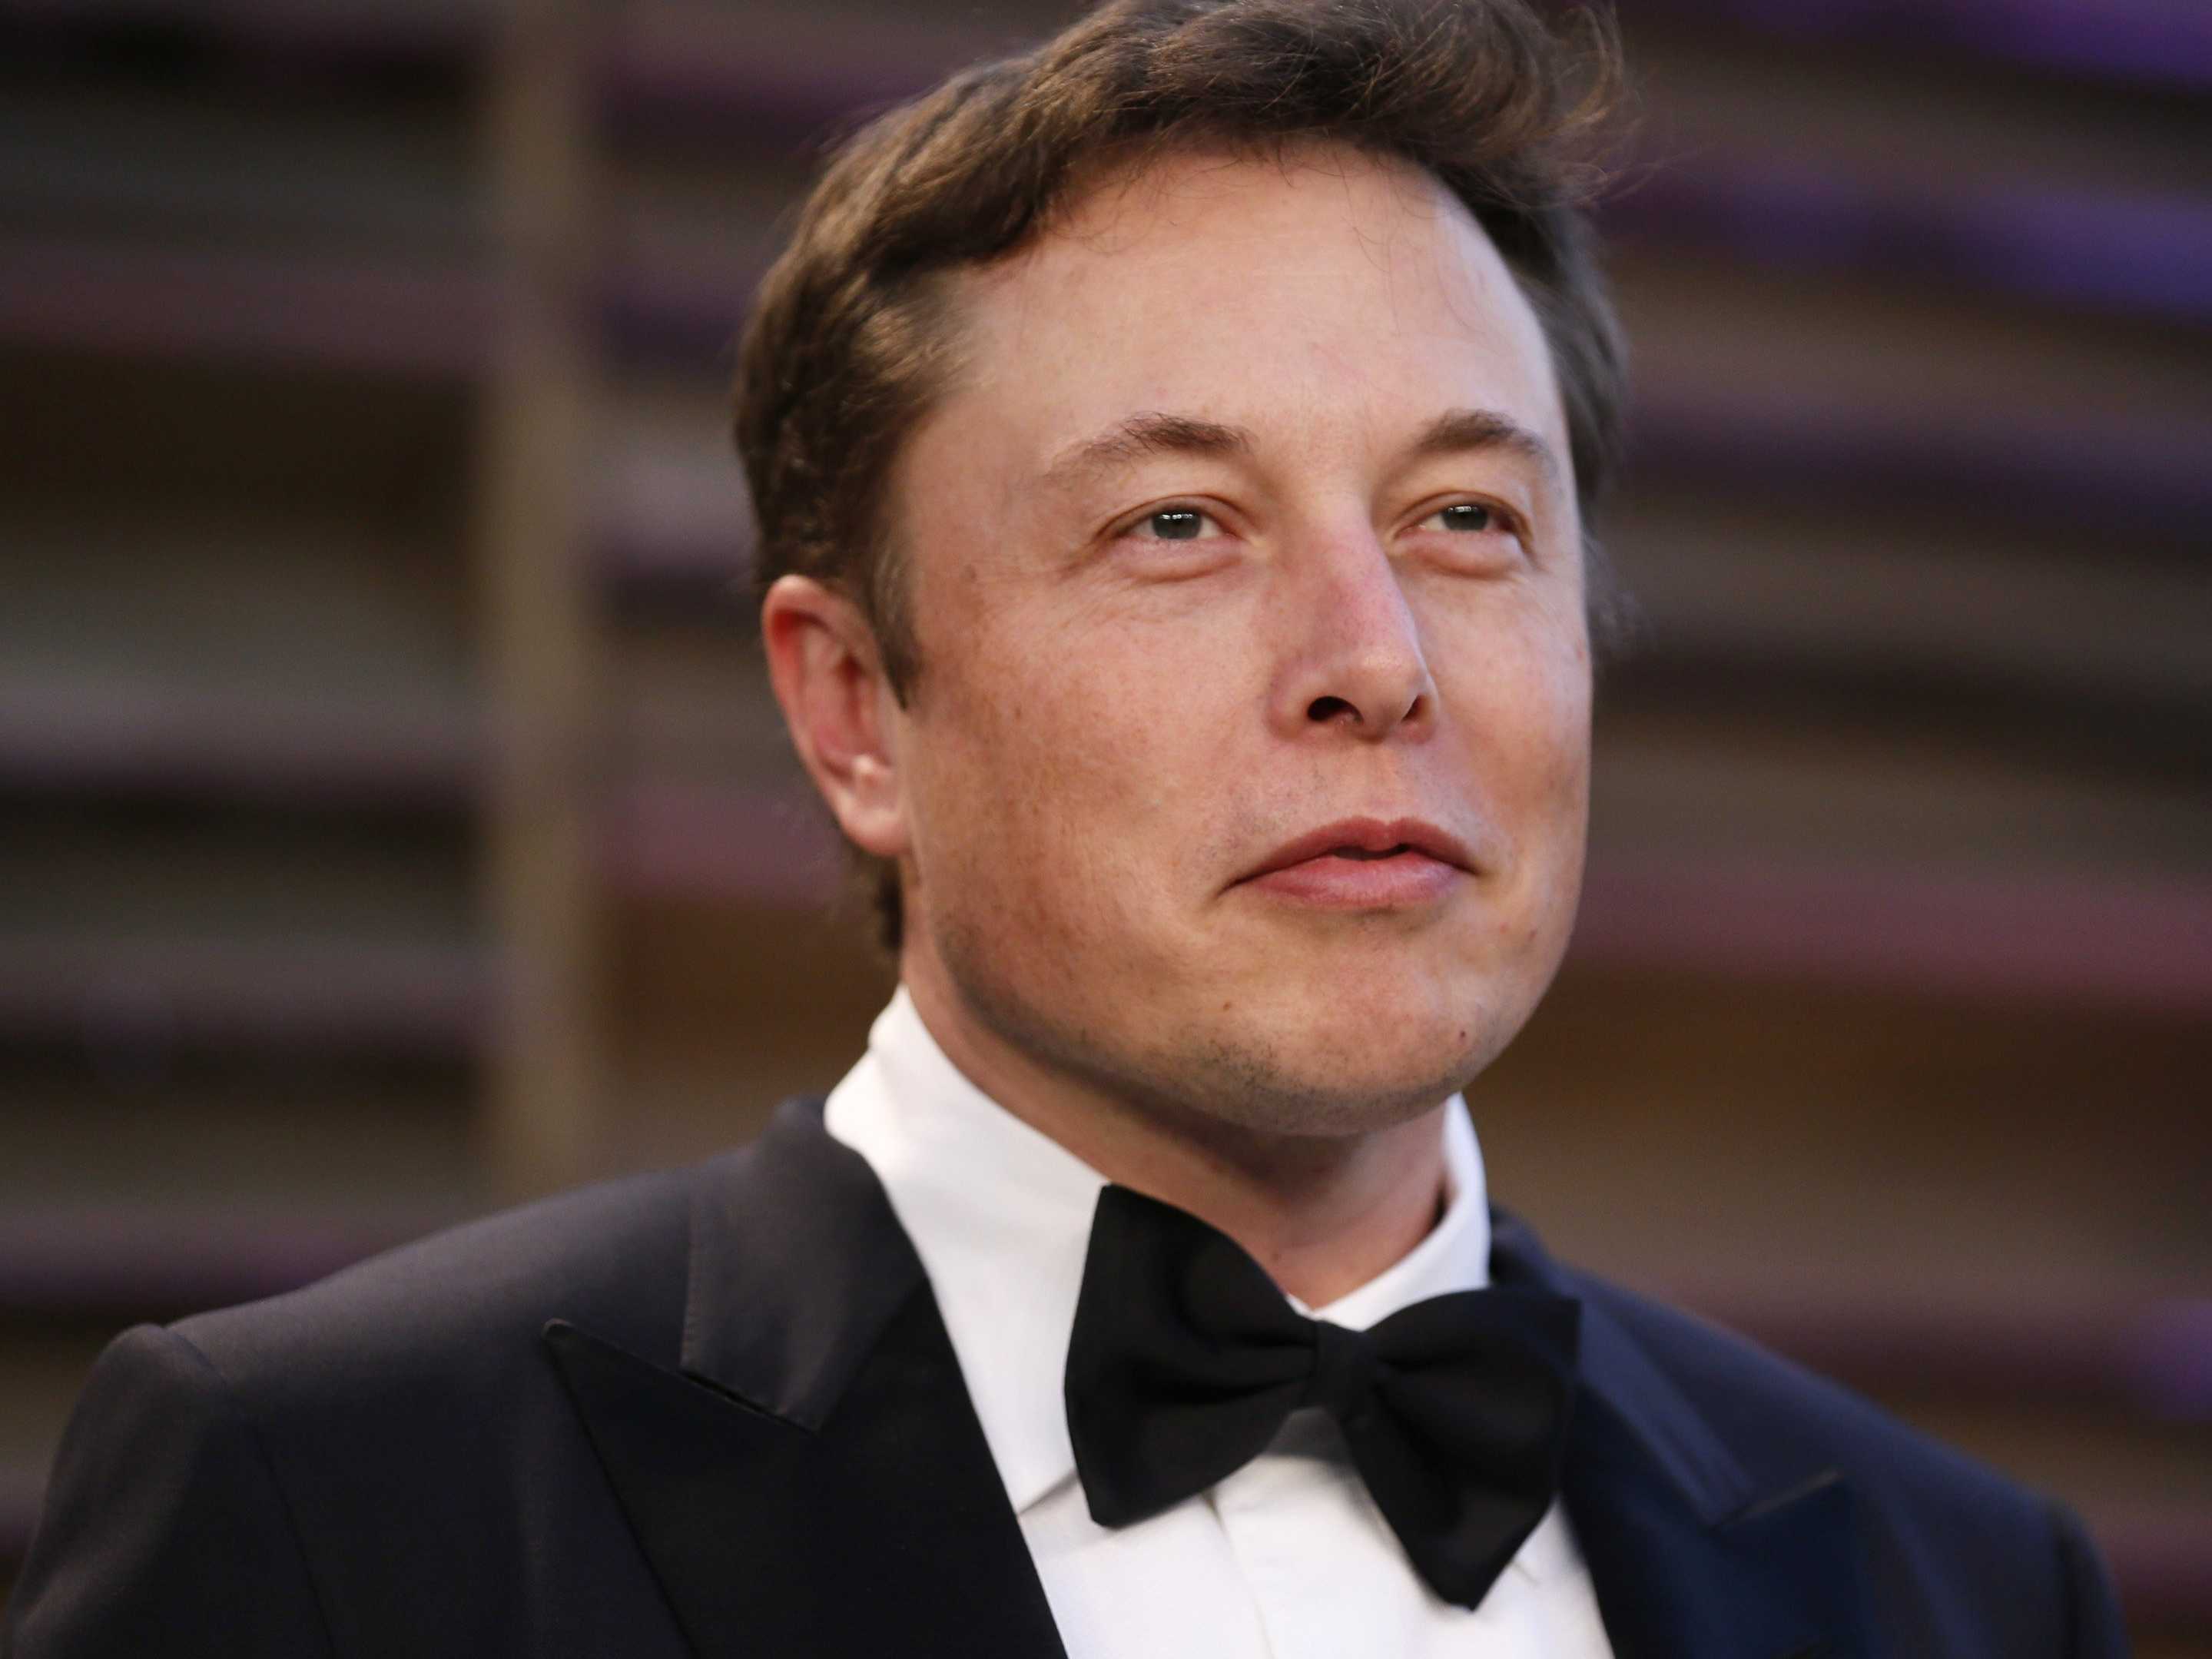 SpaceX'in eski çalışanından ilginç iddia: Elon Musk Bitcoin'in yaratıcısı olabilir [Güncelleme: Elon Musk iddiayı yalanladı]